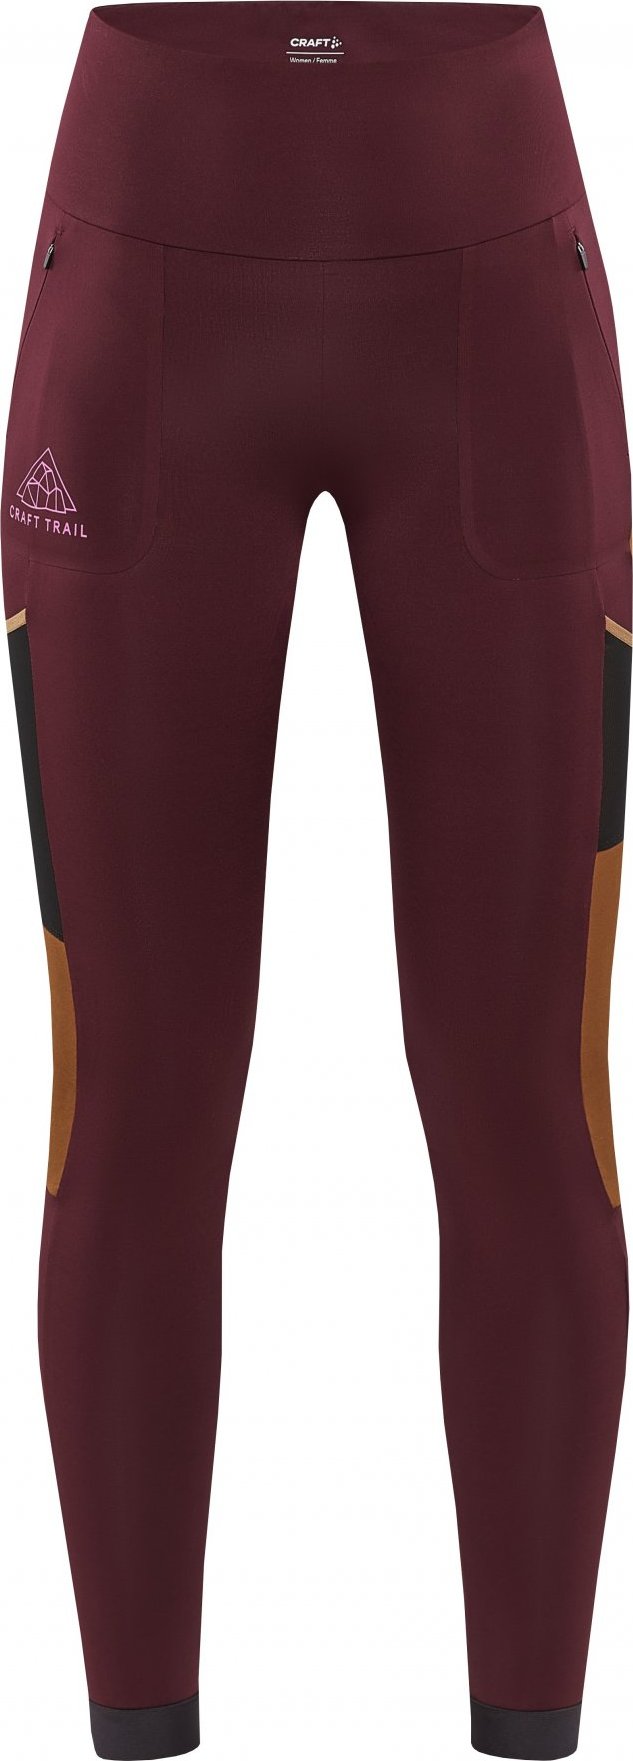 Dámské elastické kalhoty CRAFT Pro Trail Tights fialové Velikost: S